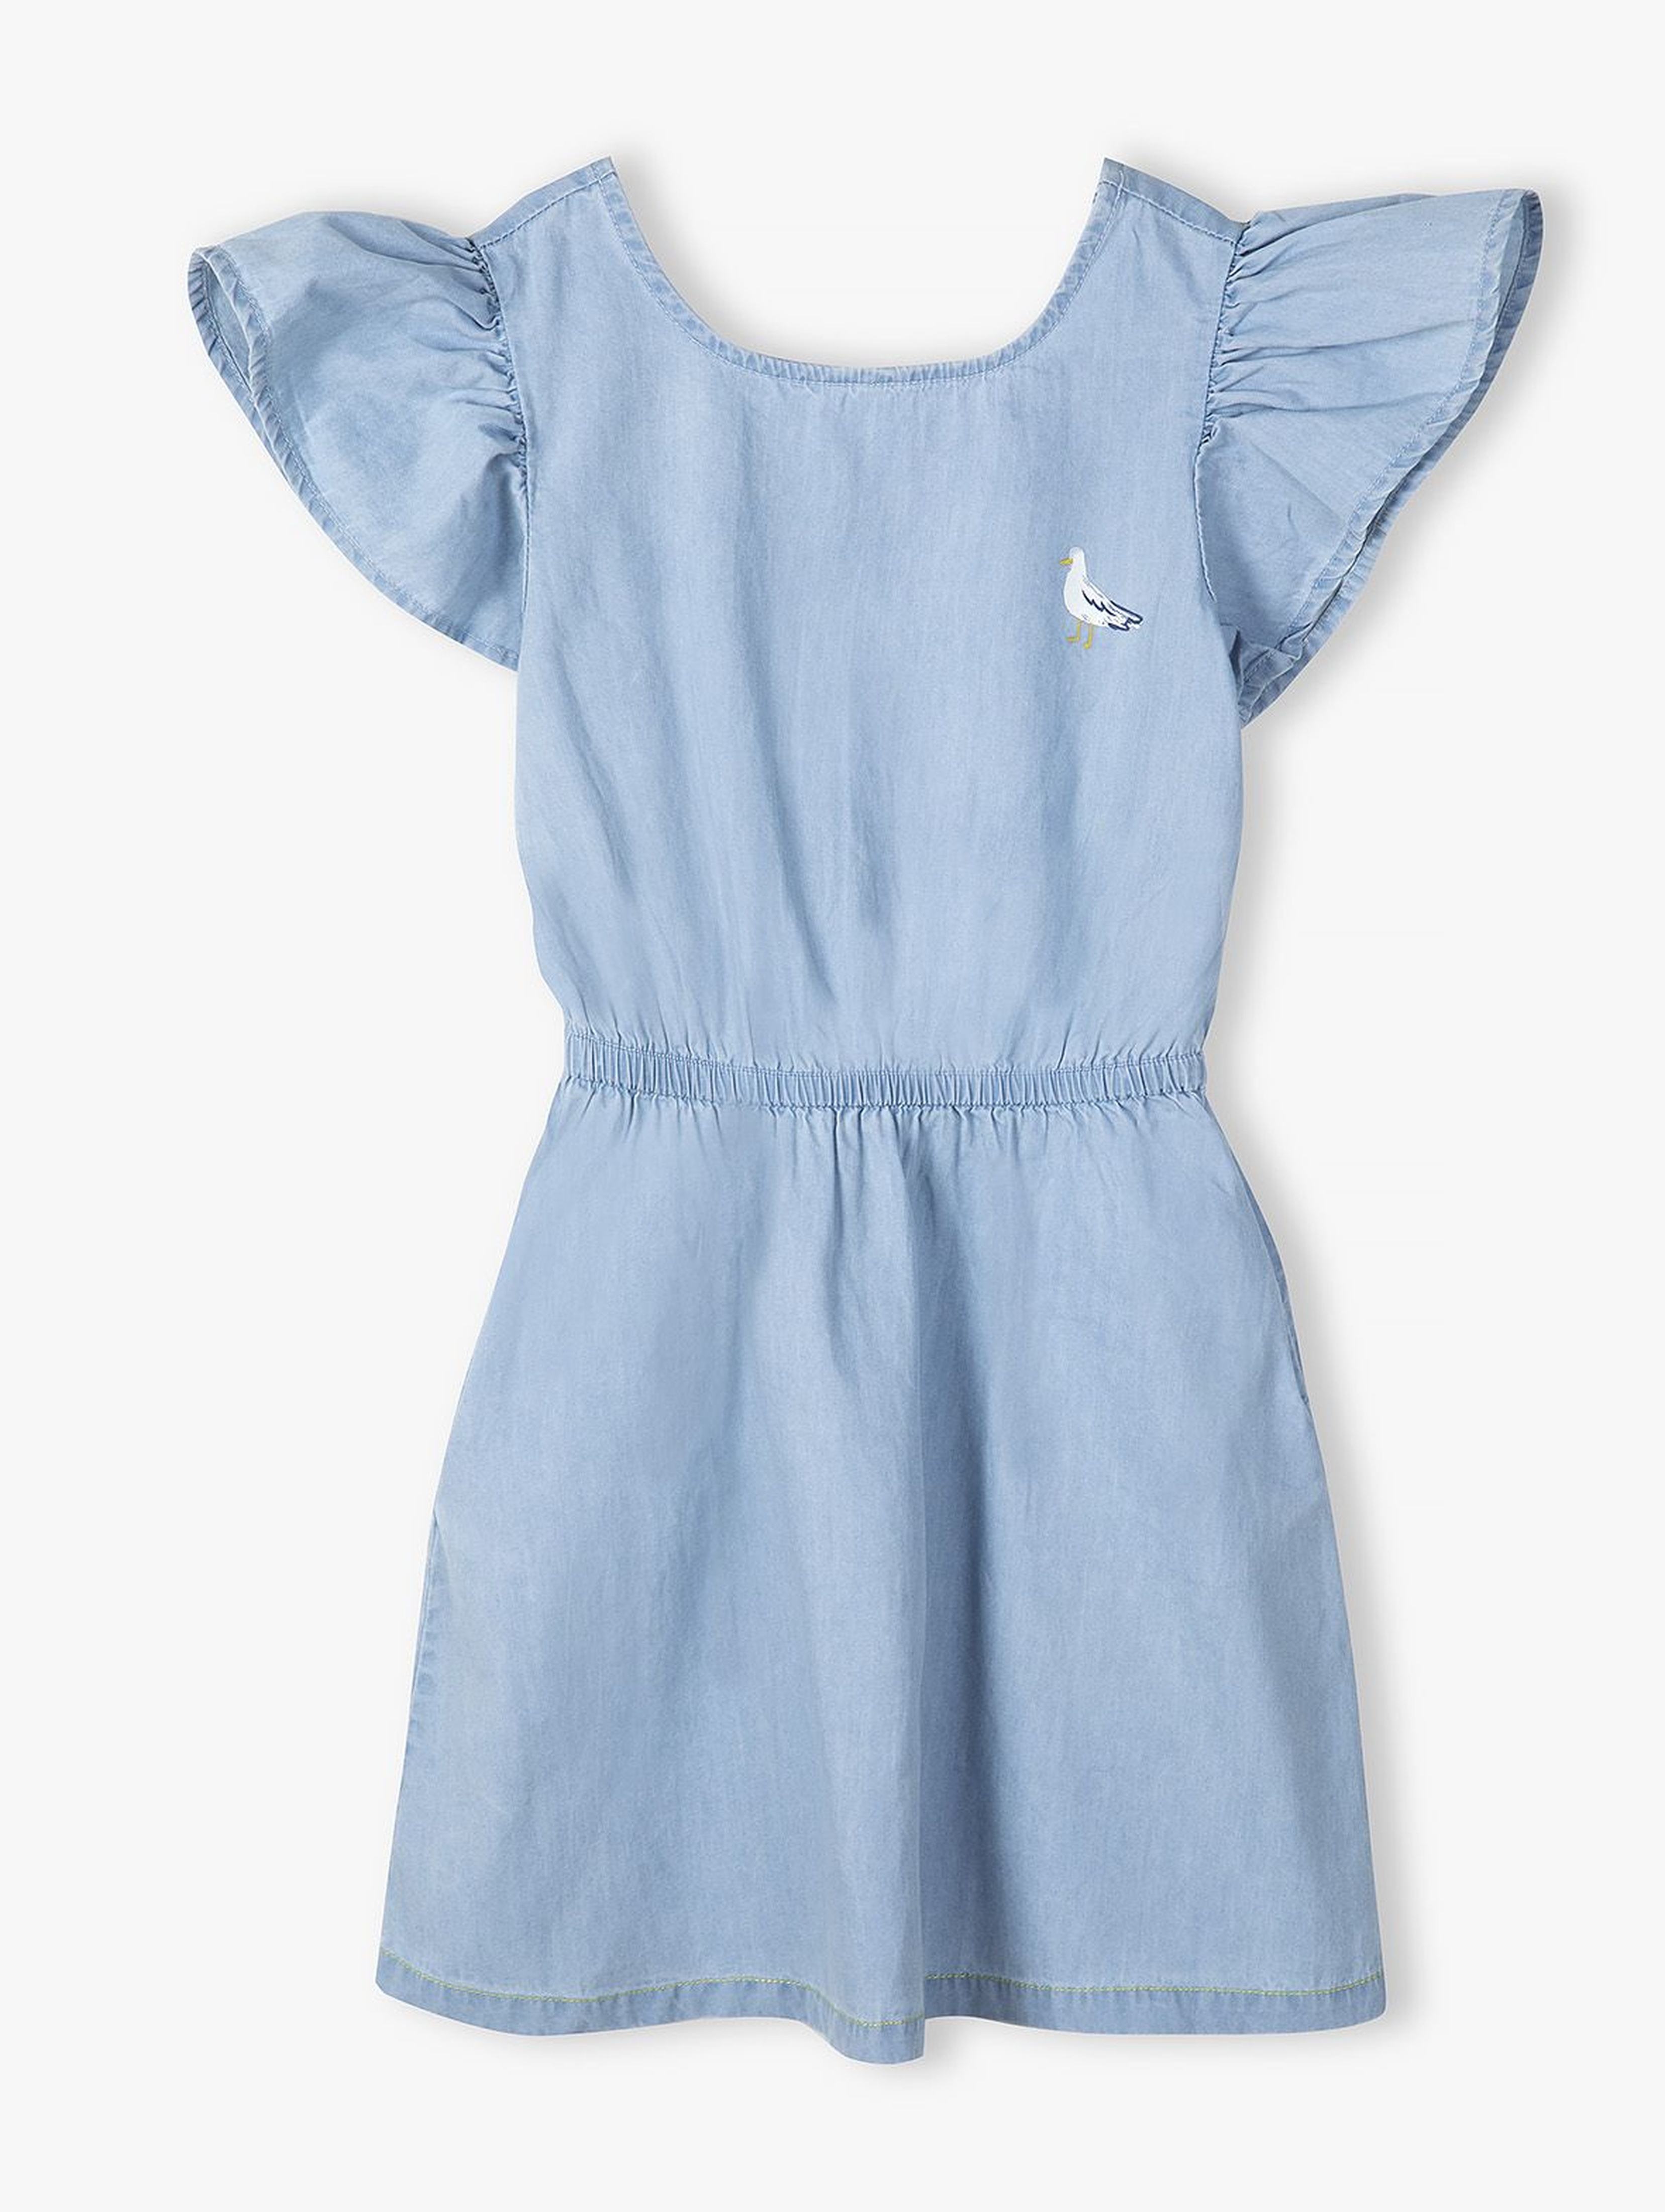 Błękitna sukienka na lato dla dziewczynki